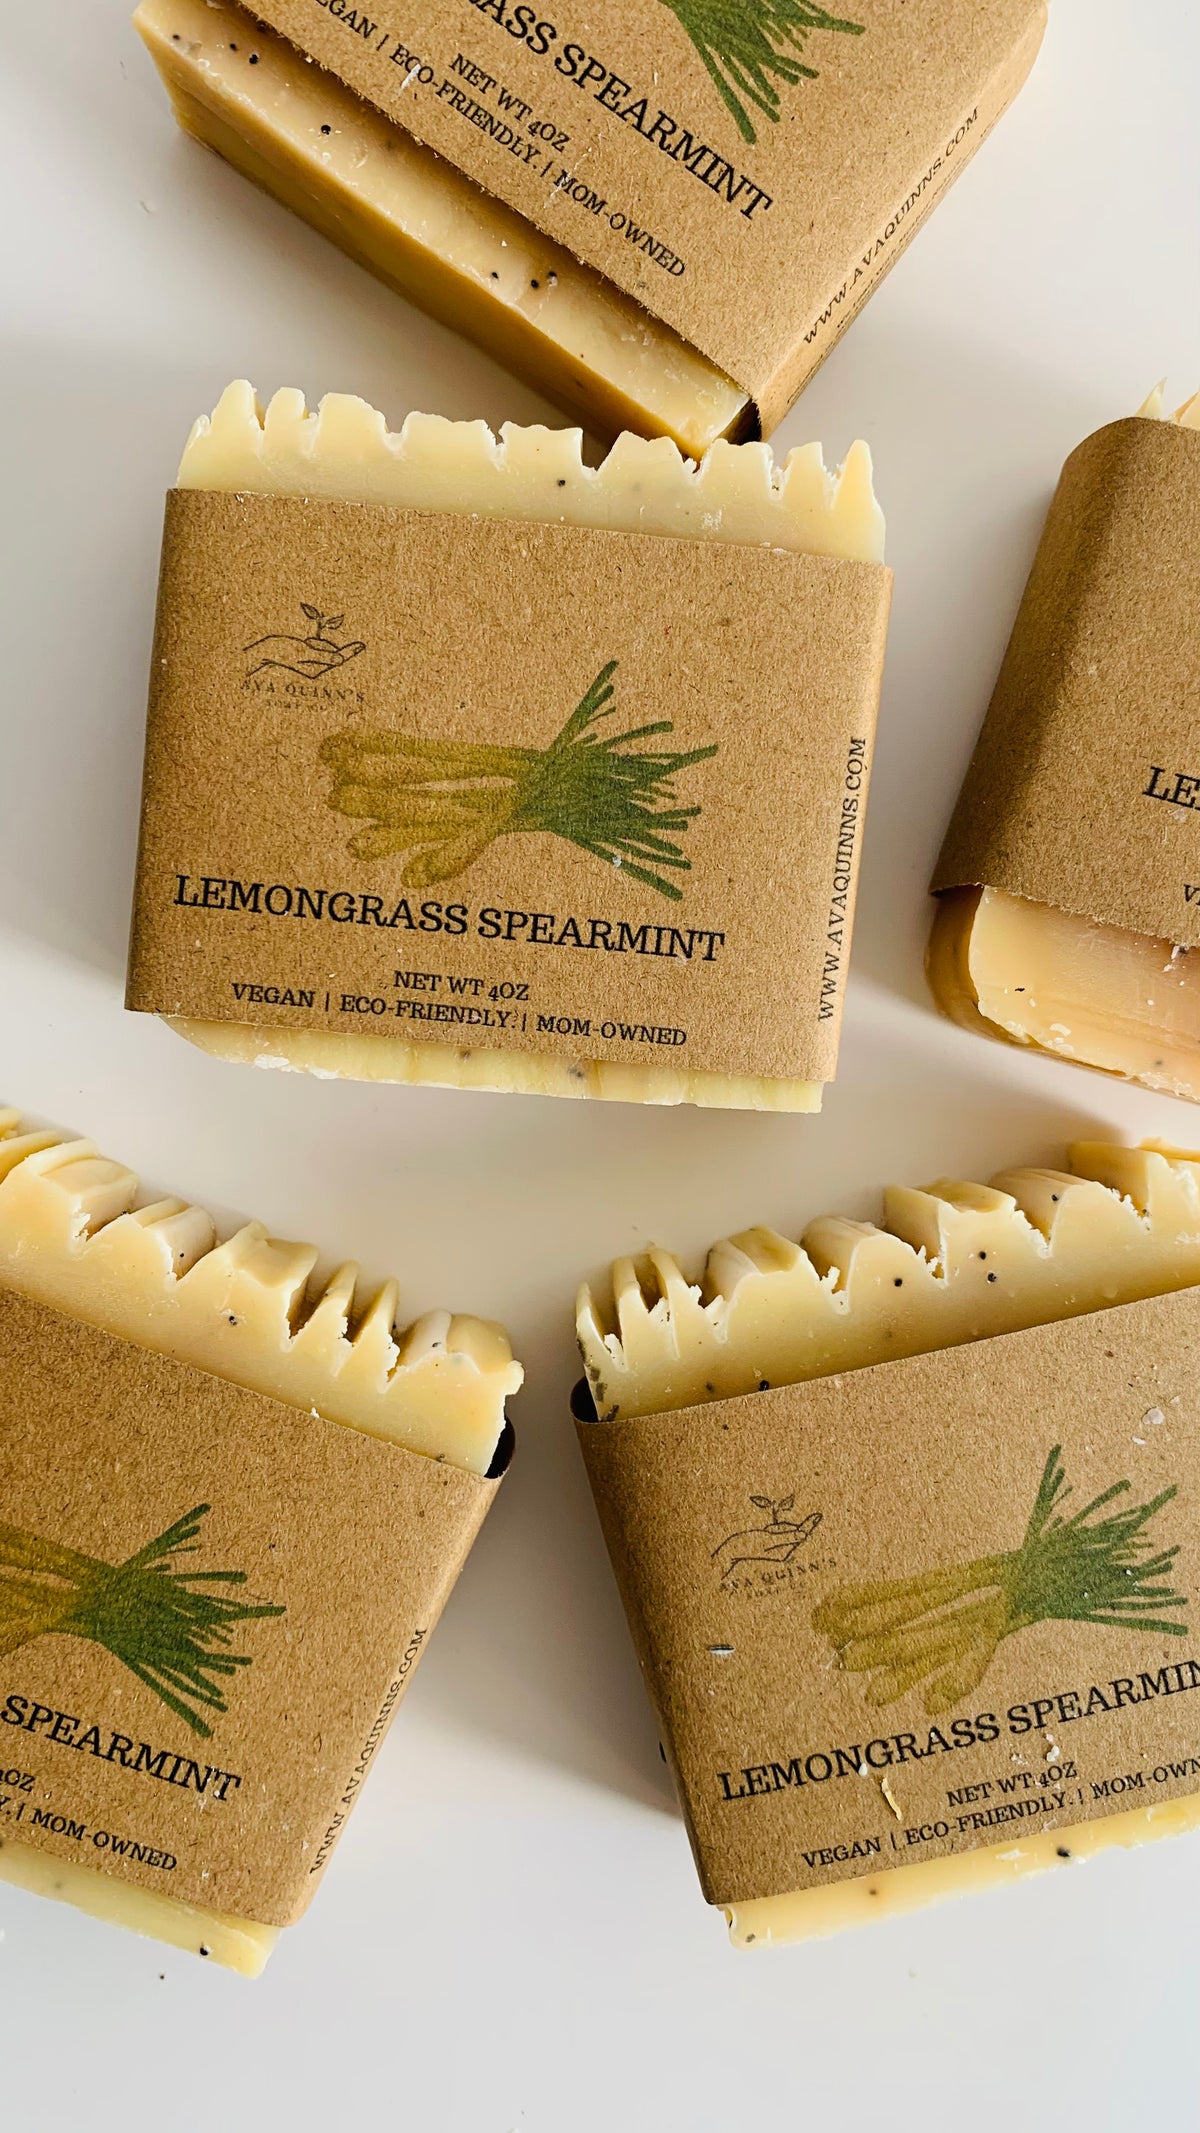 Lemongrass spearmint vegan soap by Ava Quinn’s